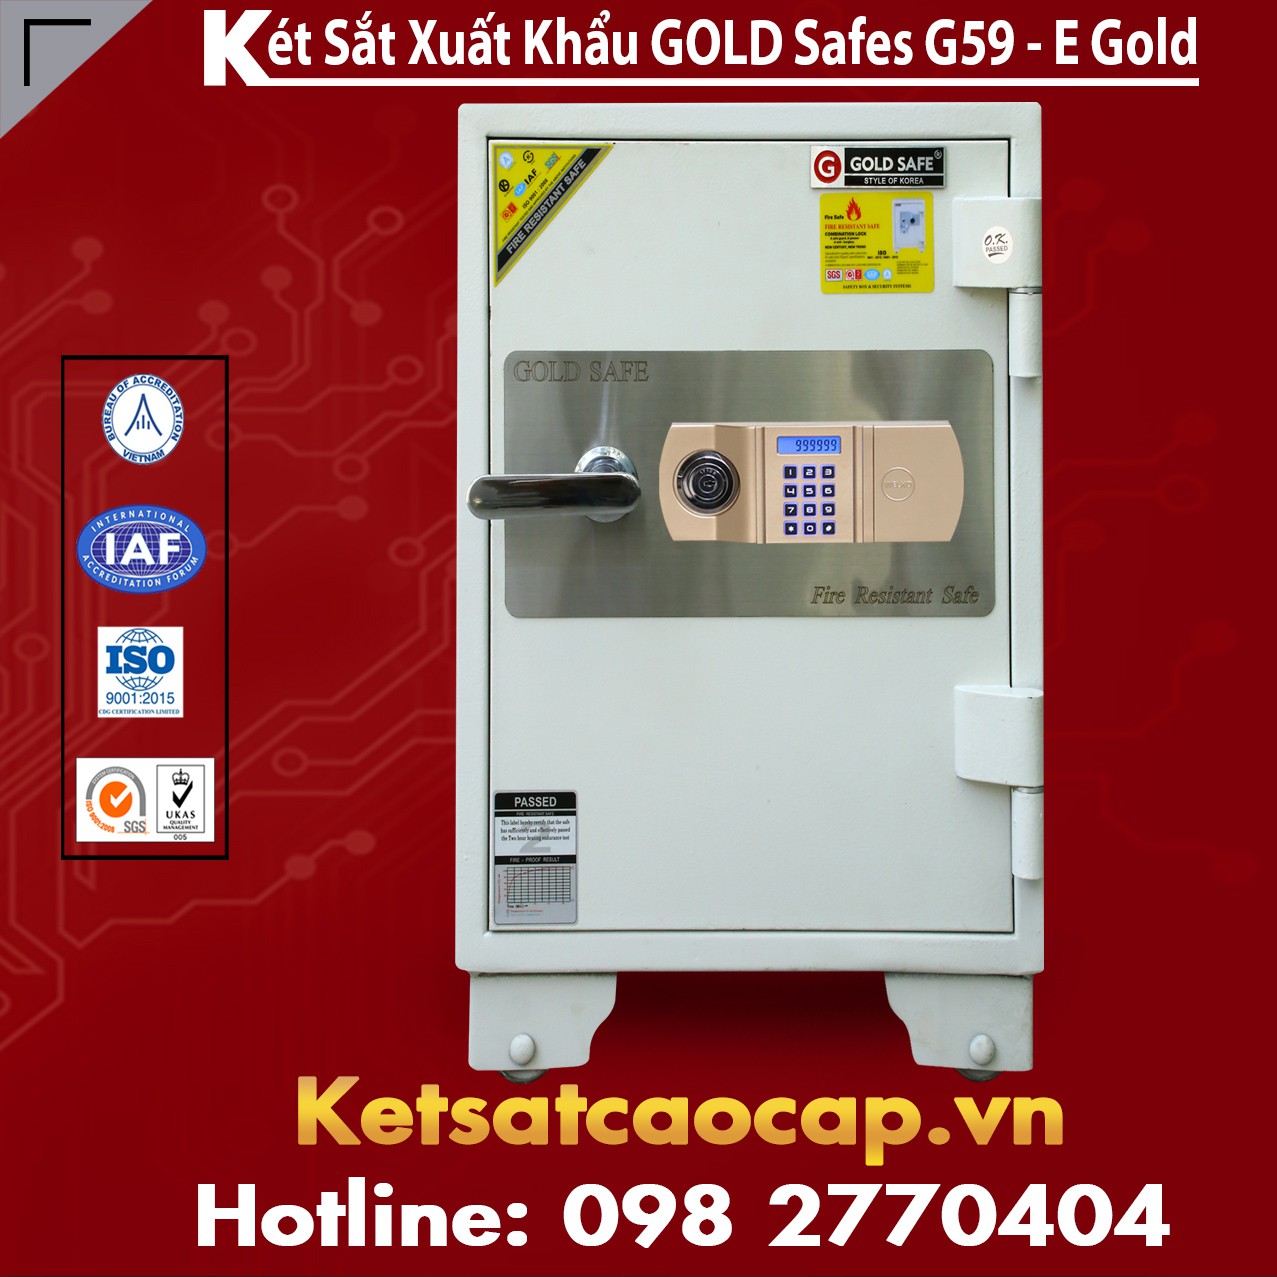 Két Sắt Thịnh Vượng GOLD SAFES G590 E Gold